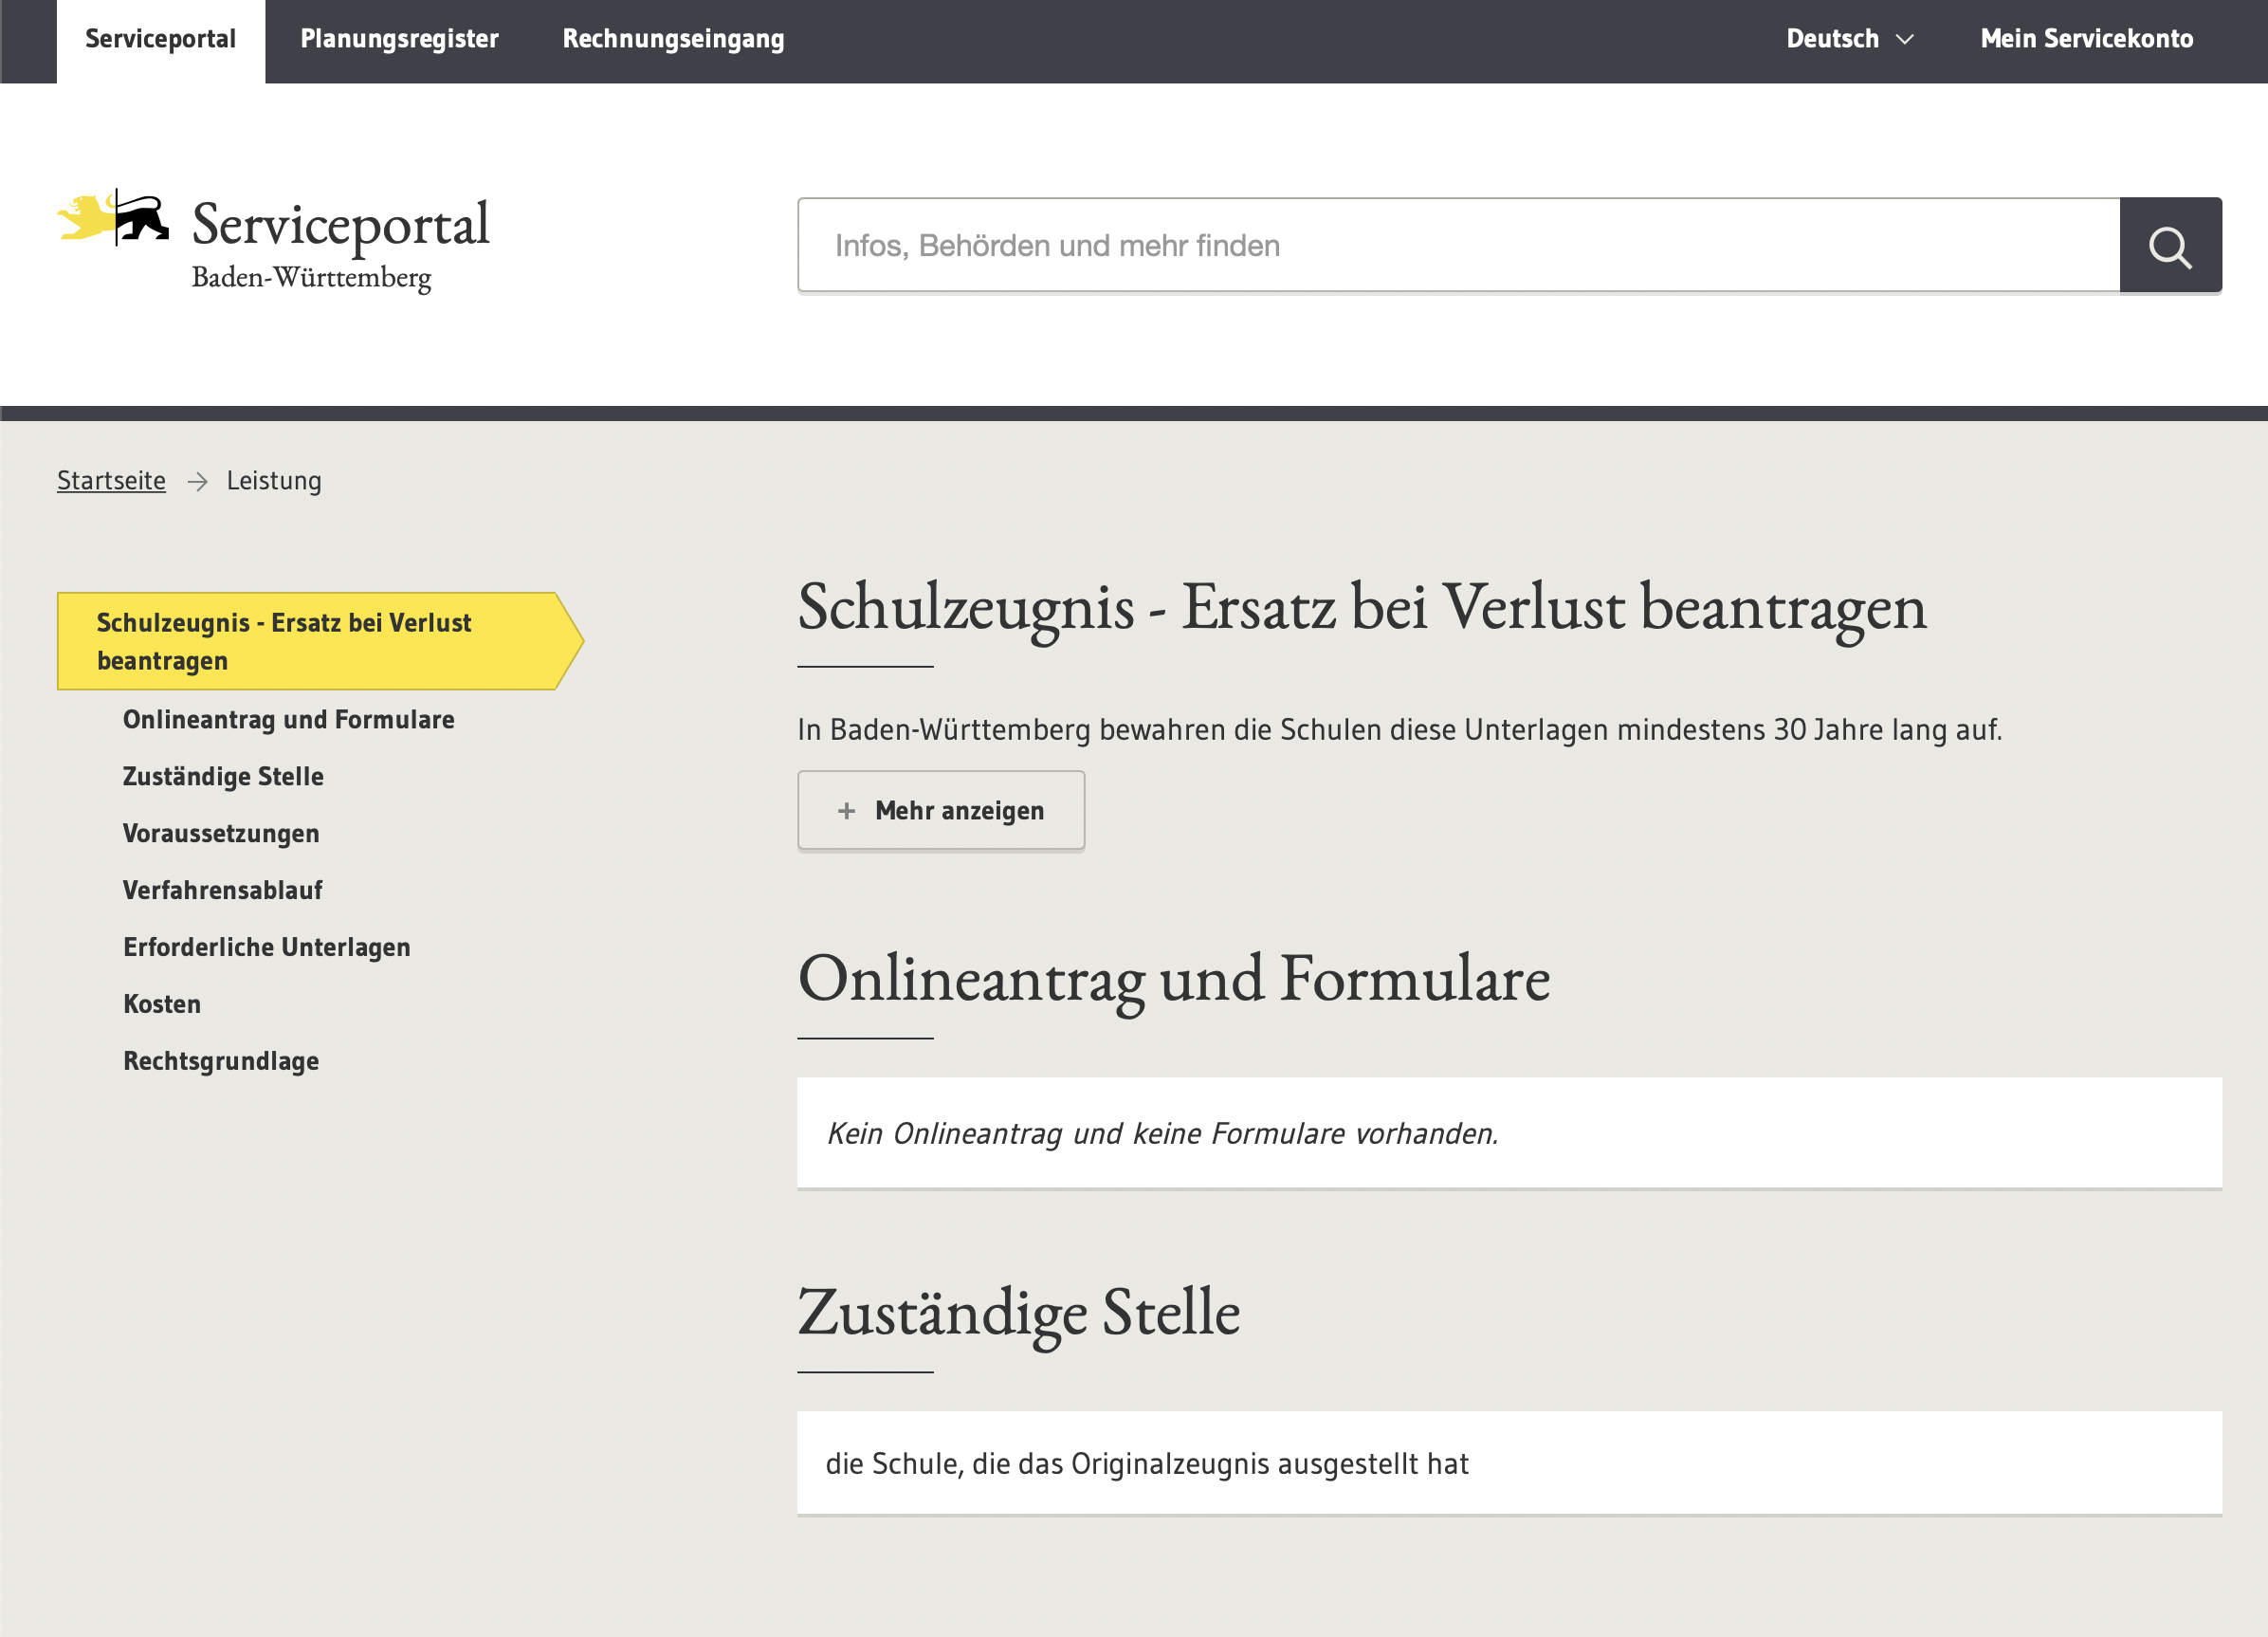 Screenshot von Serviceportal Badenwürtmberg 

Olineantrag und Formulare: Keine Vorhanden

Zuständige Stelle:
die Schule die das Orginalzeugnis ausgestellt hat.